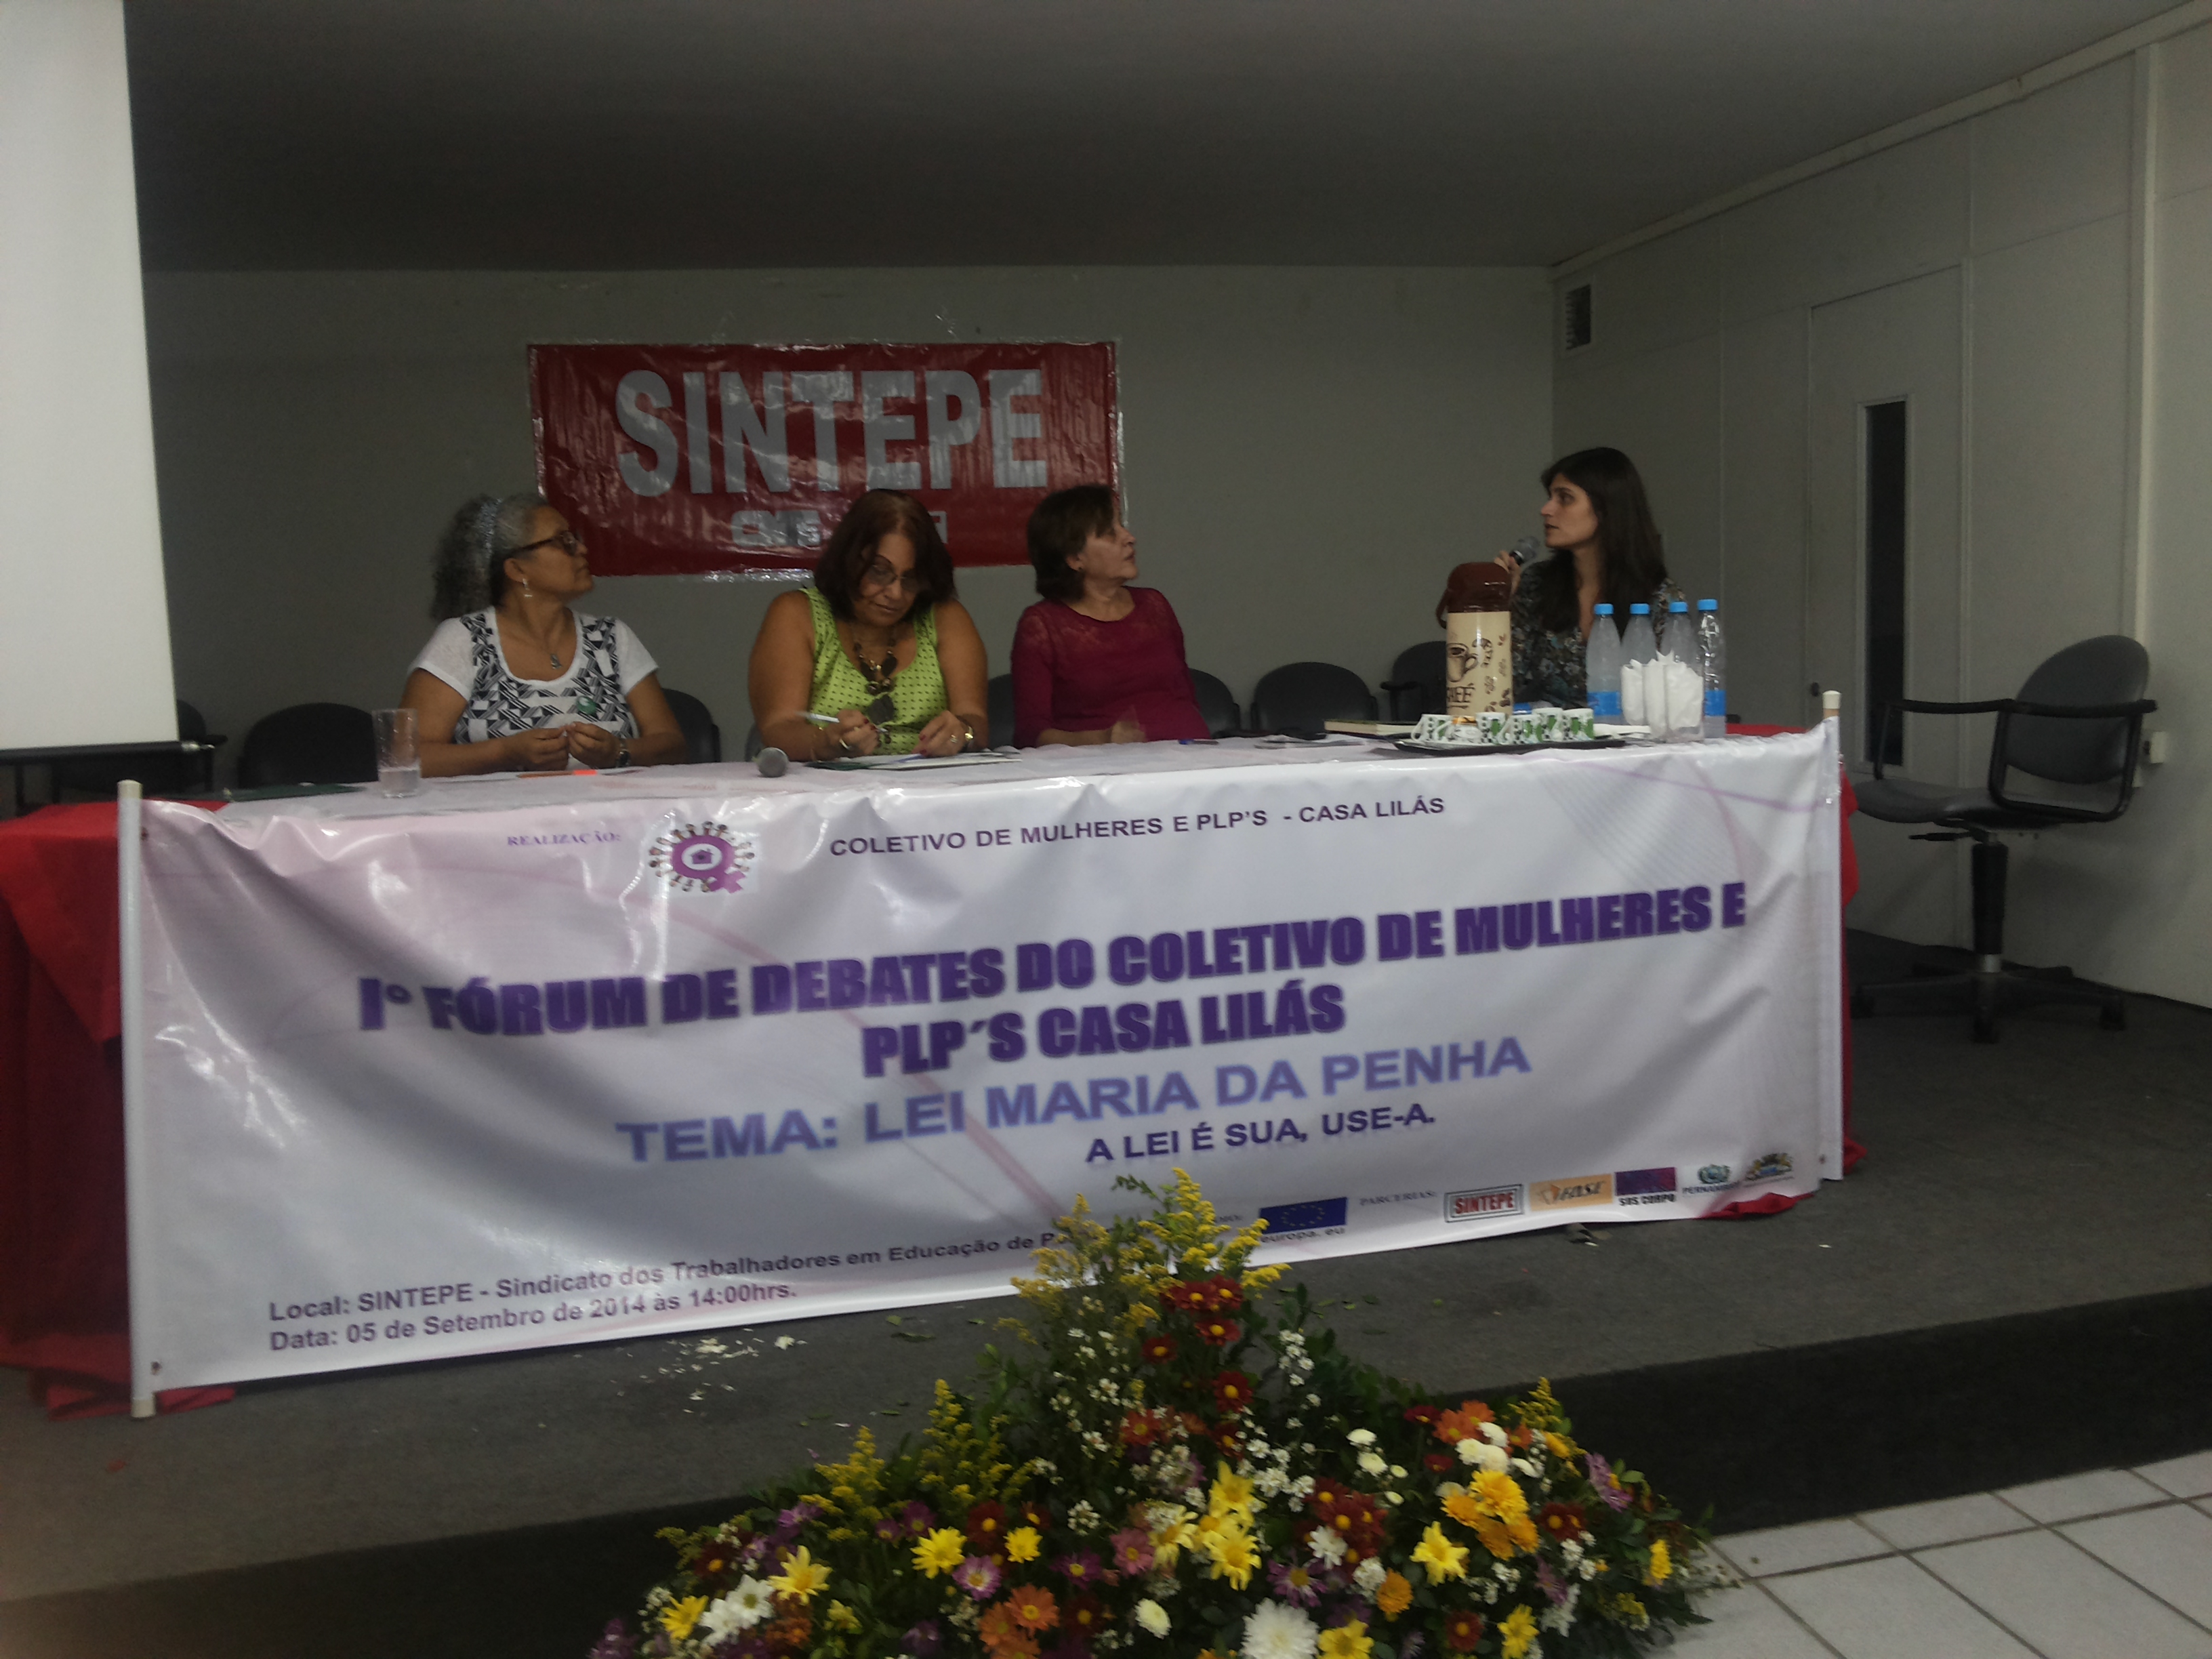 05/09/14 – fórum – I Fórum de Debates do Coletivo de Mulheres e PLP’s Casa Lilás